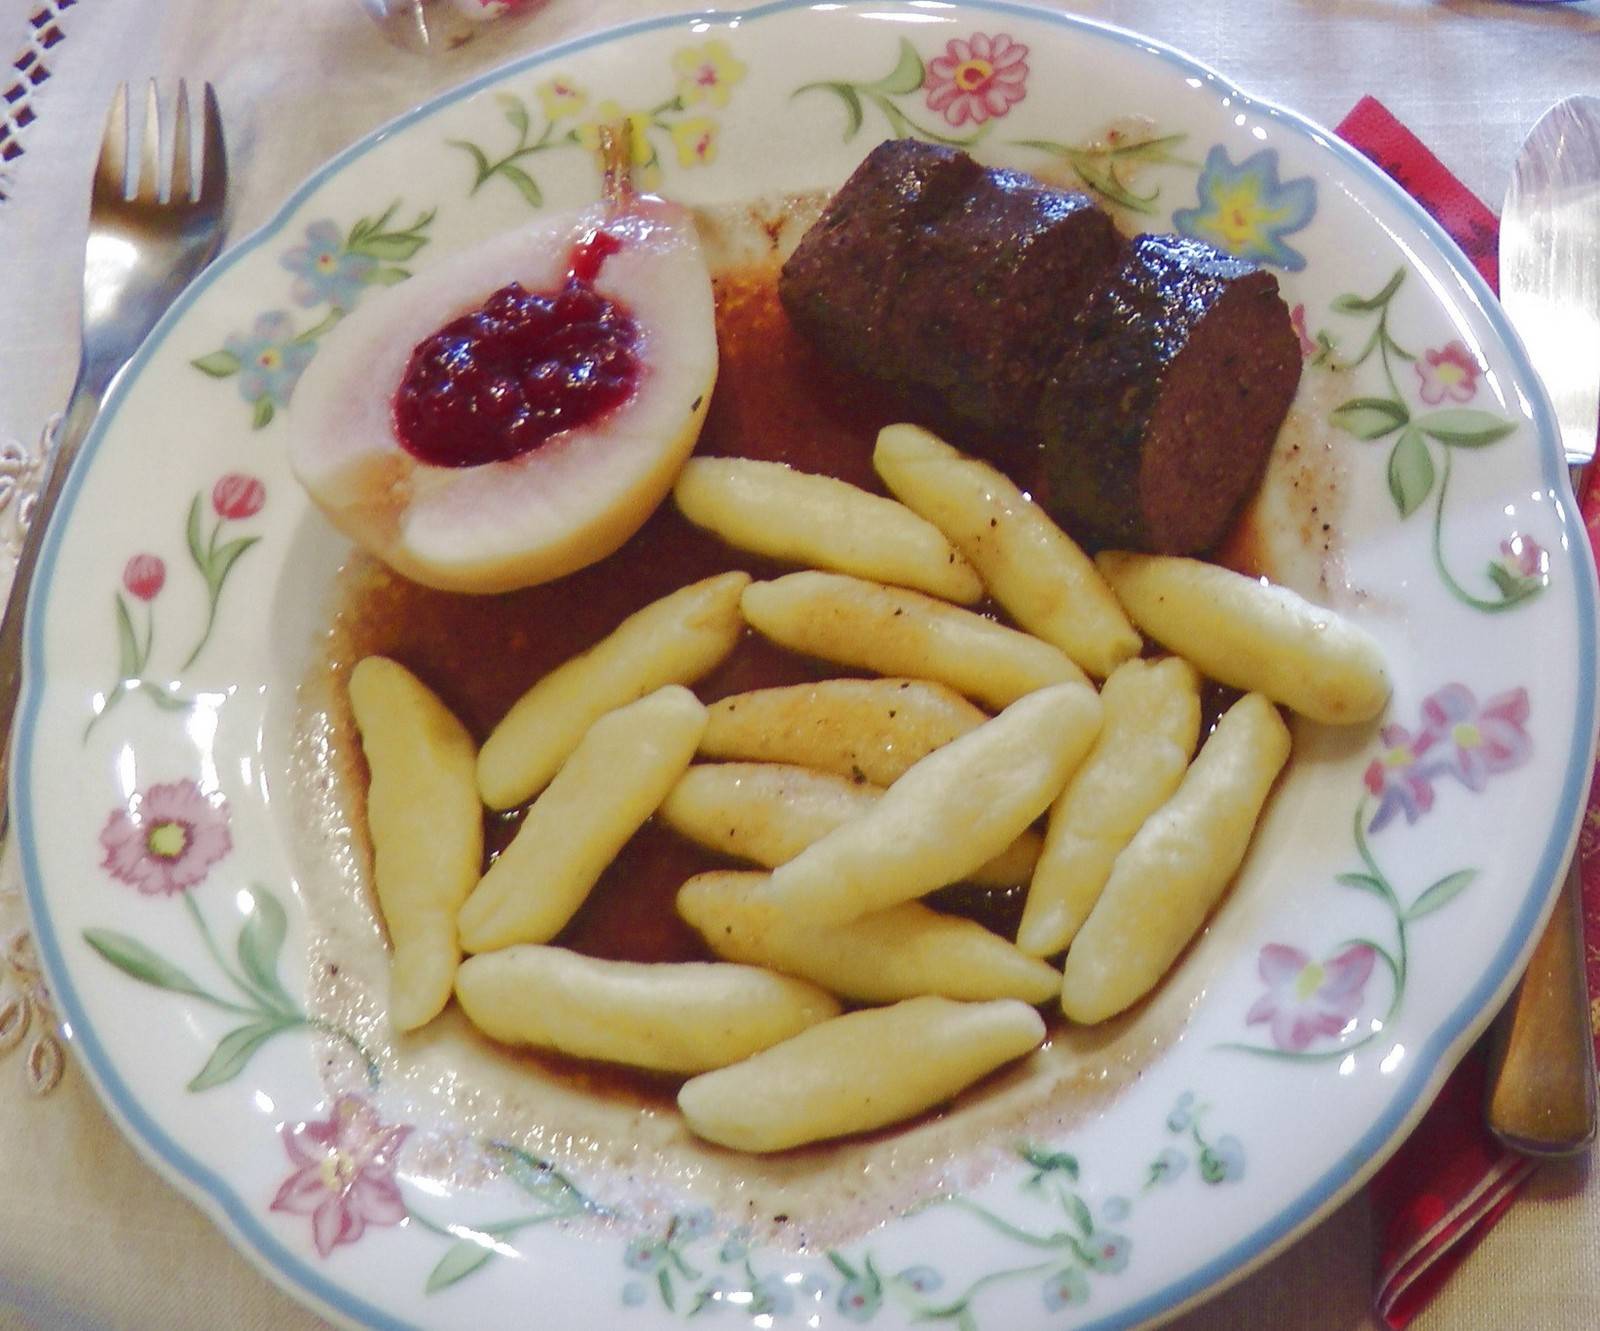 Maibockfilet auf Rotweinsauce mit Schupfnudeln und Preiselbeerbirne